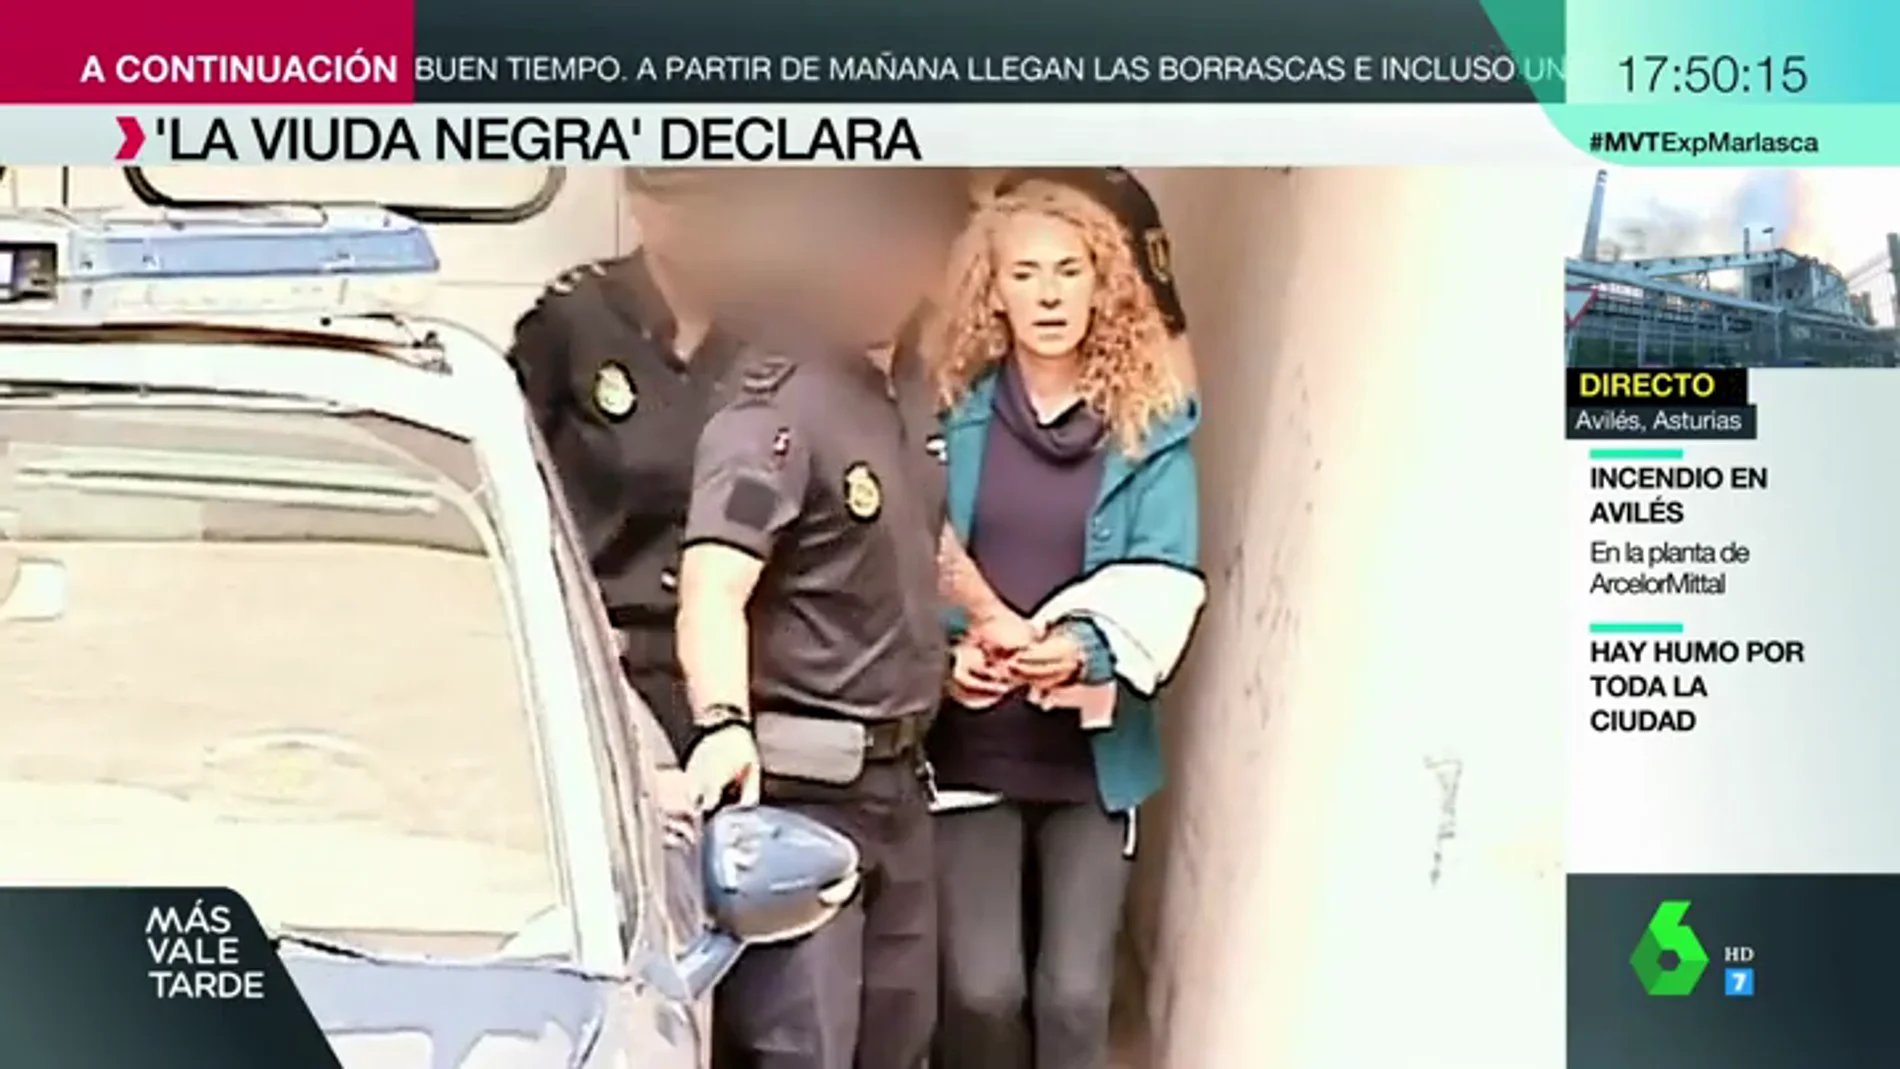 La viuda negra de Alicante y su cuidador declaran por petición propia: 